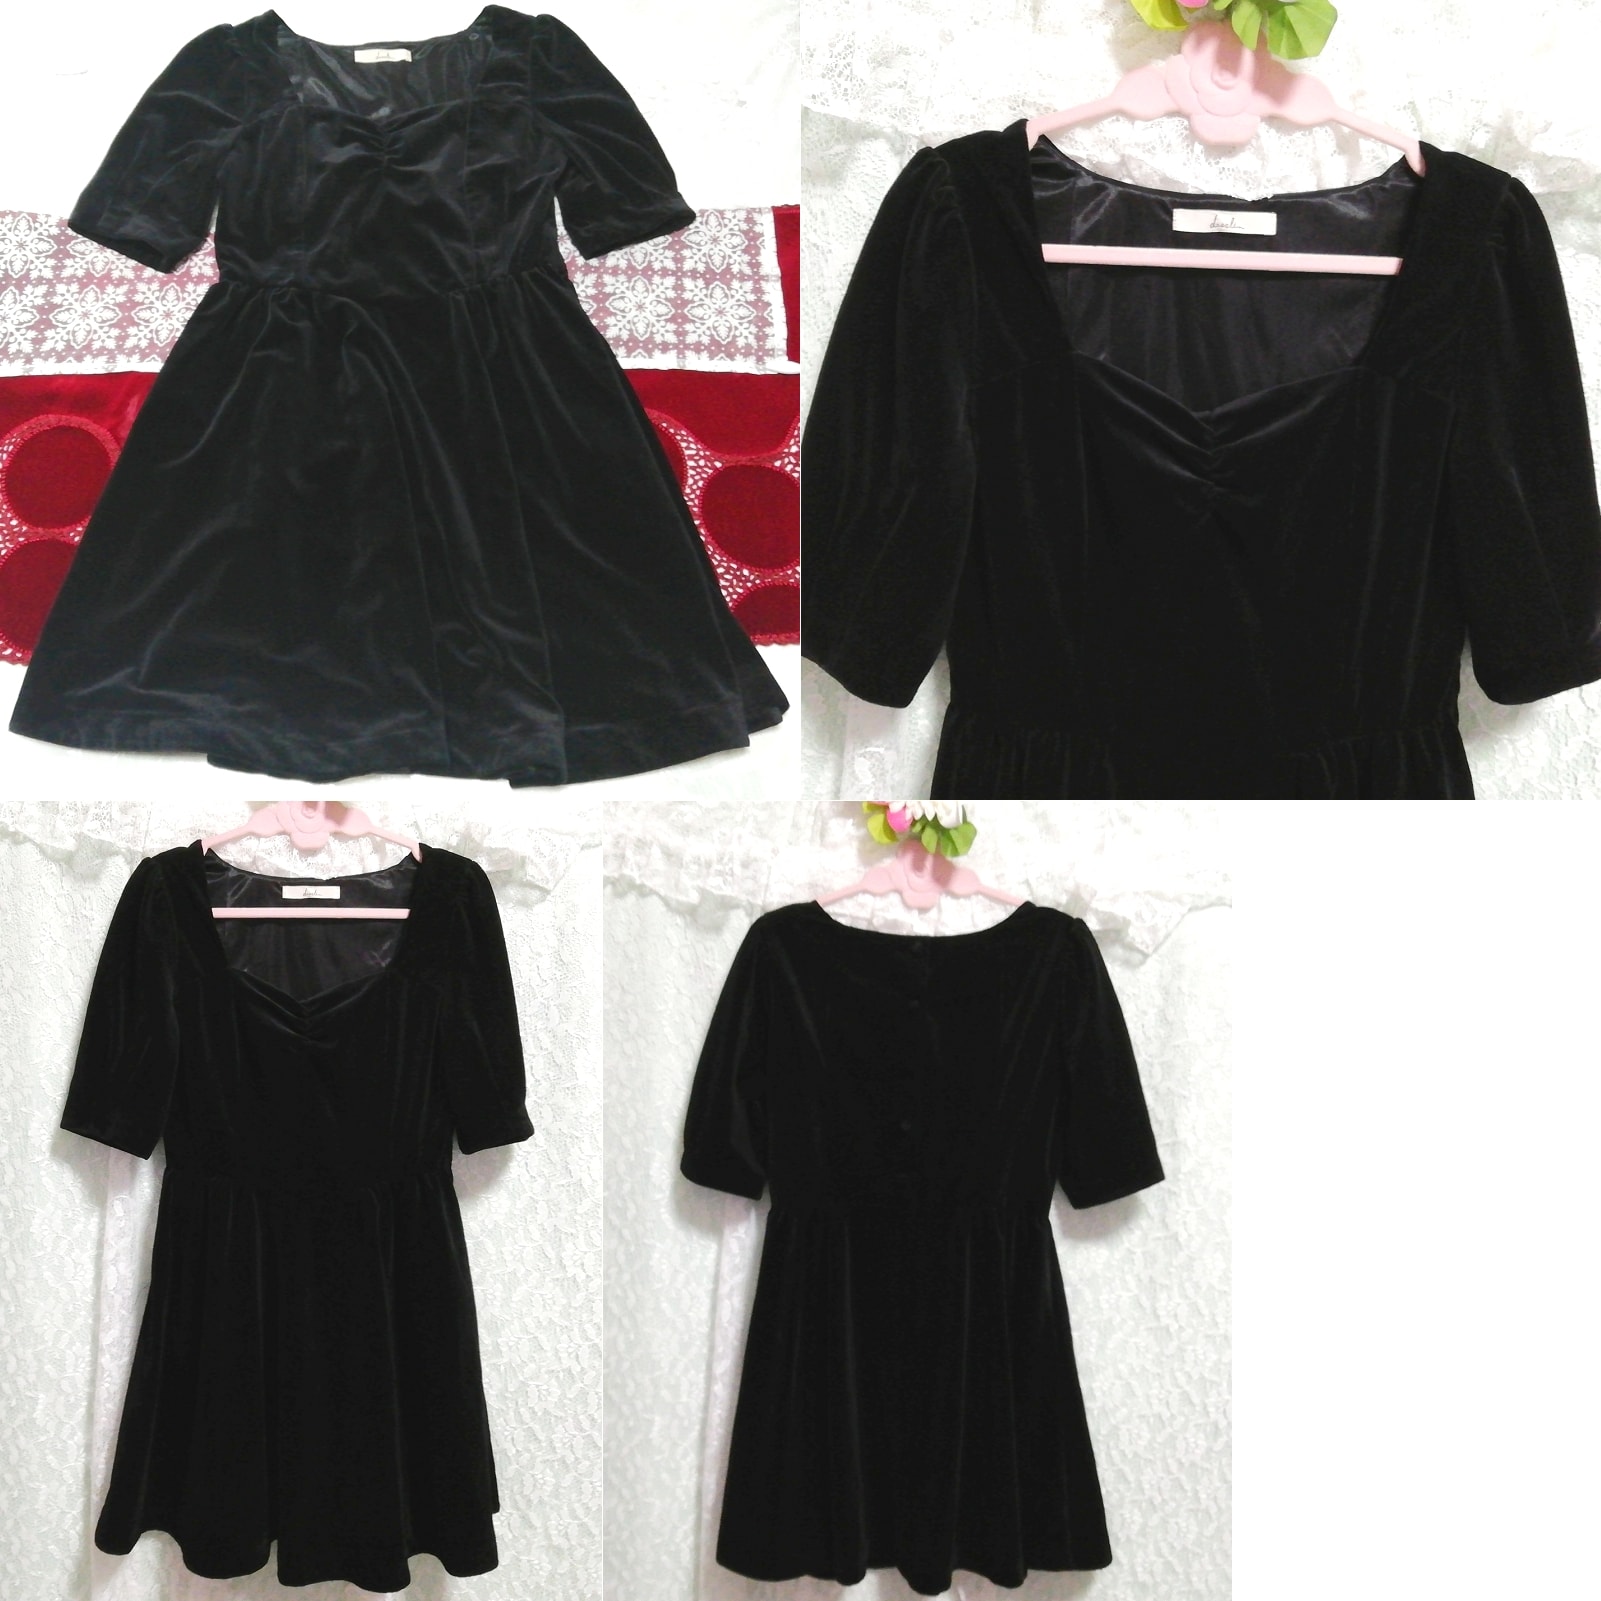 Vestido de una pieza camisón negligee brillante de terciopelo negro, sayo, manga corta, talla m